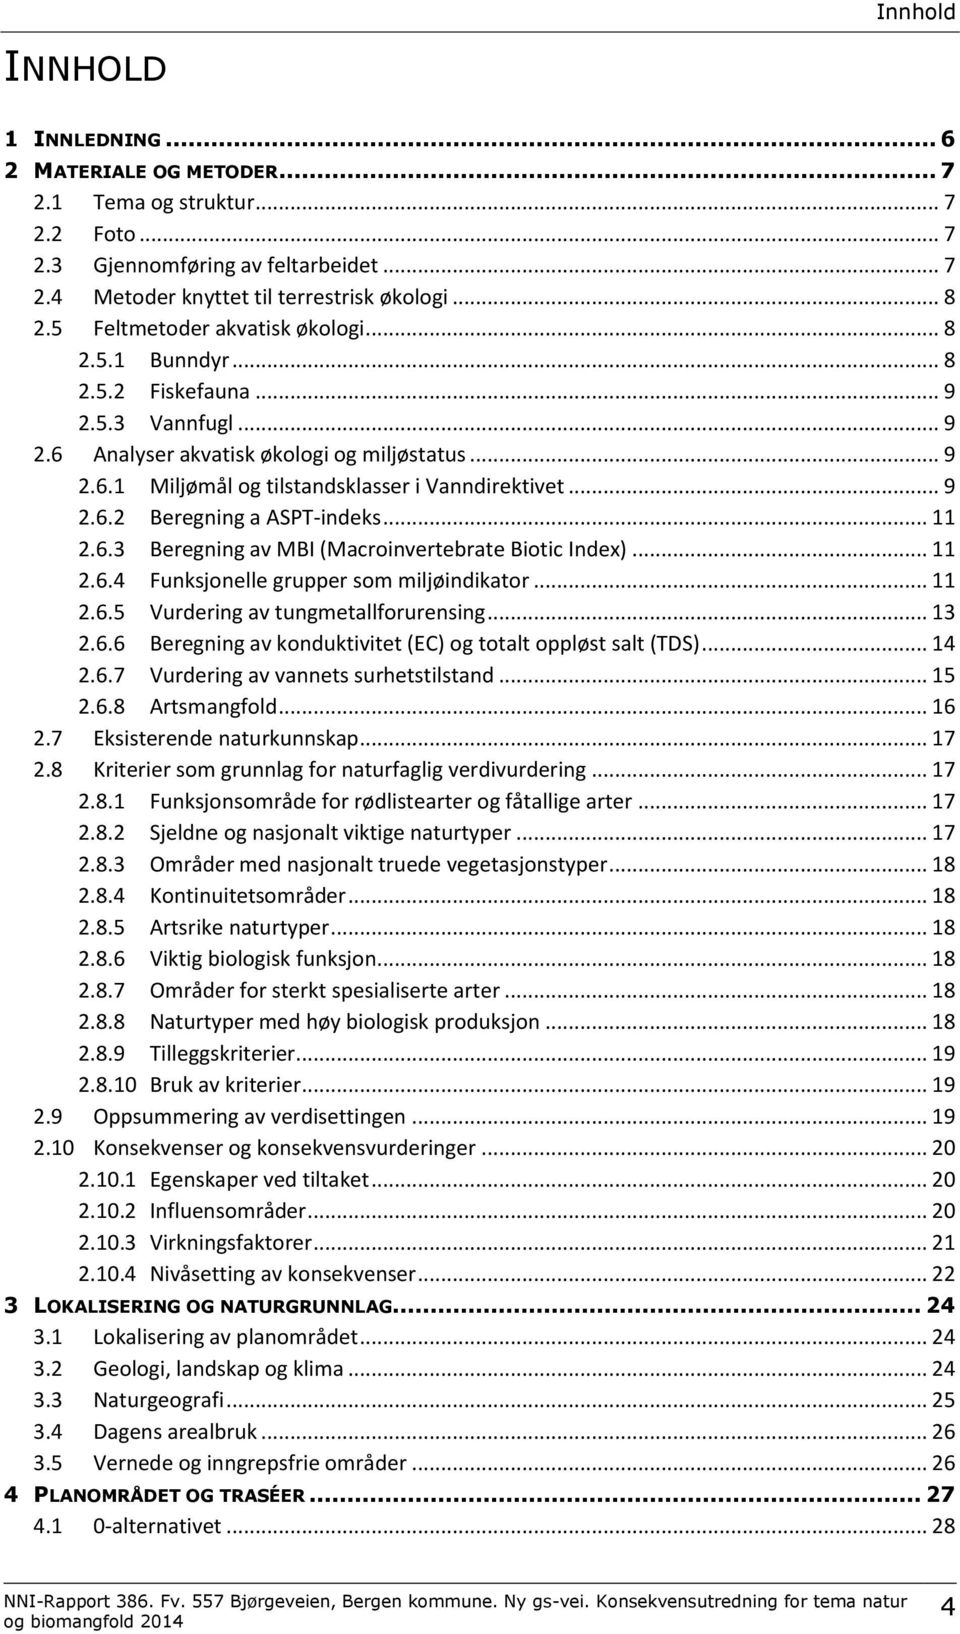 .. 9 2.6.2 Beregning a ASPT-indeks... 11 2.6.3 Beregning av MBI (Macroinvertebrate Biotic Index)... 11 2.6.4 Funksjonelle grupper som miljøindikator... 11 2.6.5 Vurdering av tungmetallforurensing.